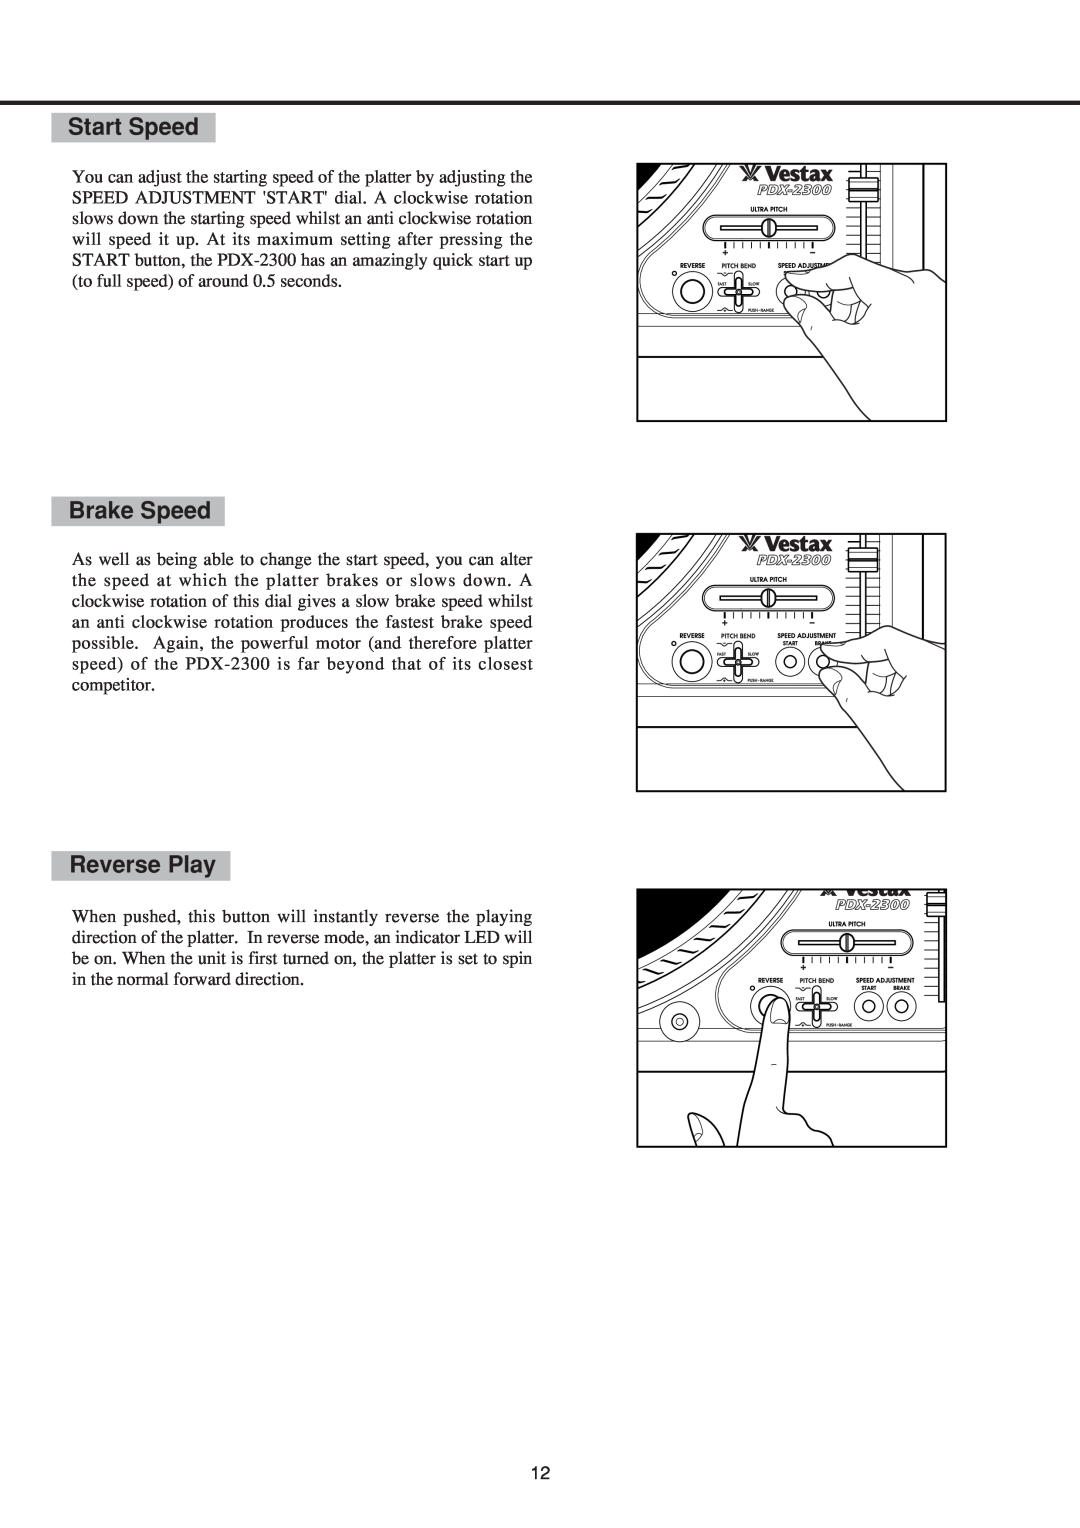 Vestax PDX-2300 owner manual Start Speed, Brake Speed, Reverse Play 